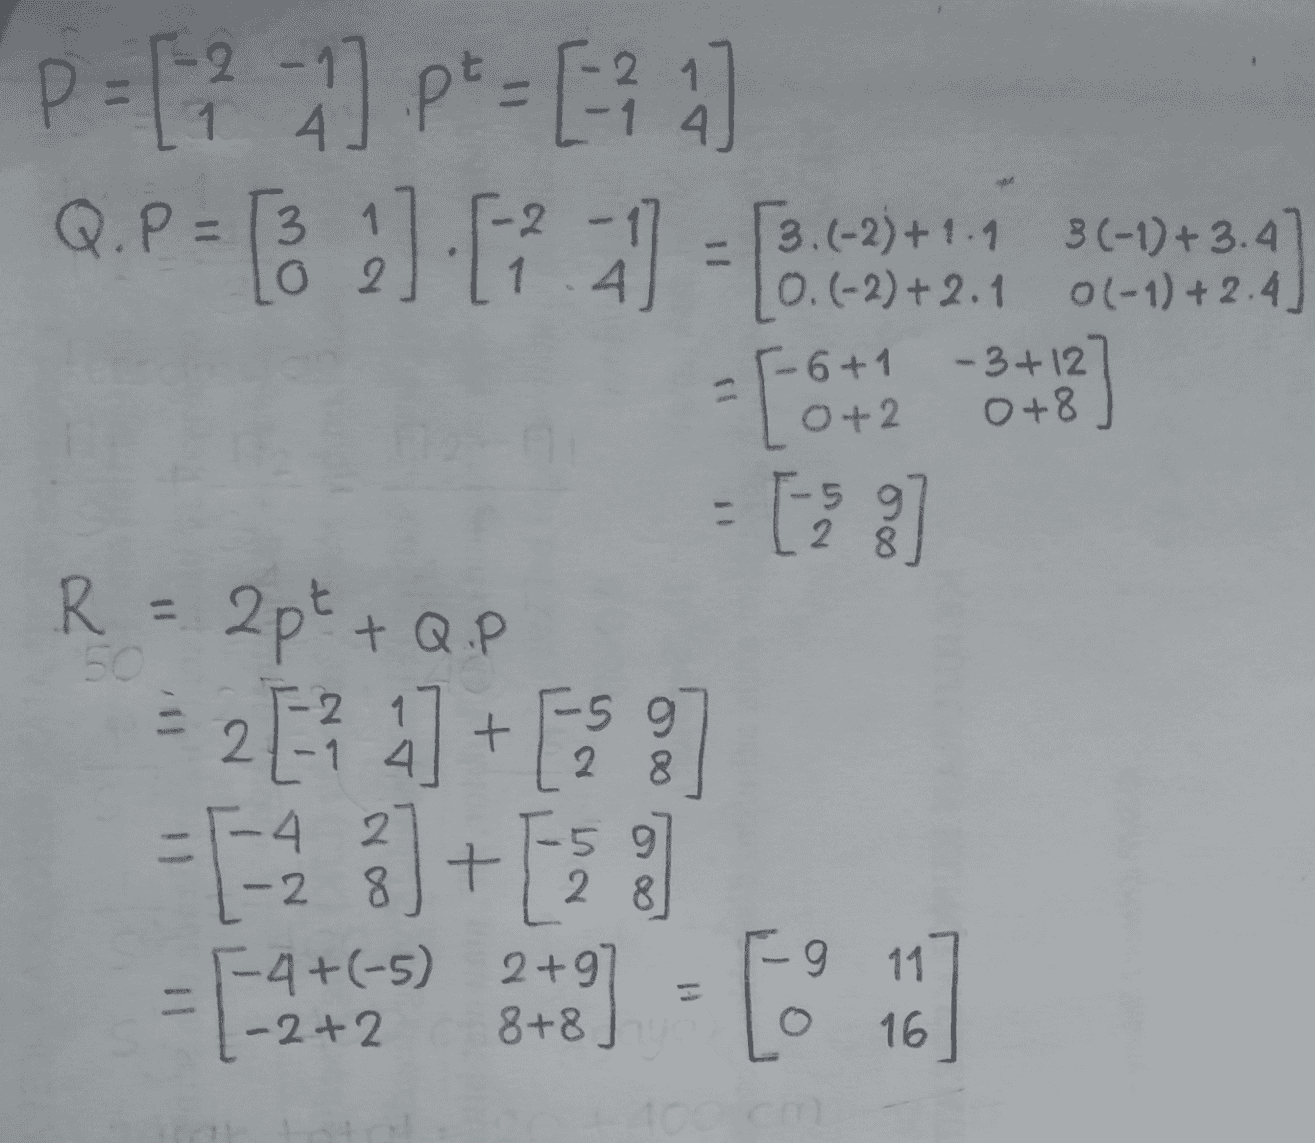 p=1?:] p=10 [3.(-2) +1.9 3(-1)+3.47 0.(-2) +2.1 0(-1) +2.4] 5-6+1 - 3+127 0+2 0+8 - 5 R = 2pt +Q.P -2 1 5 9 2. 8. - 4 2 5 9 -2 8 28 7-4+(-5) 2+9 - 2+2 8+8 9 11 [ 16 